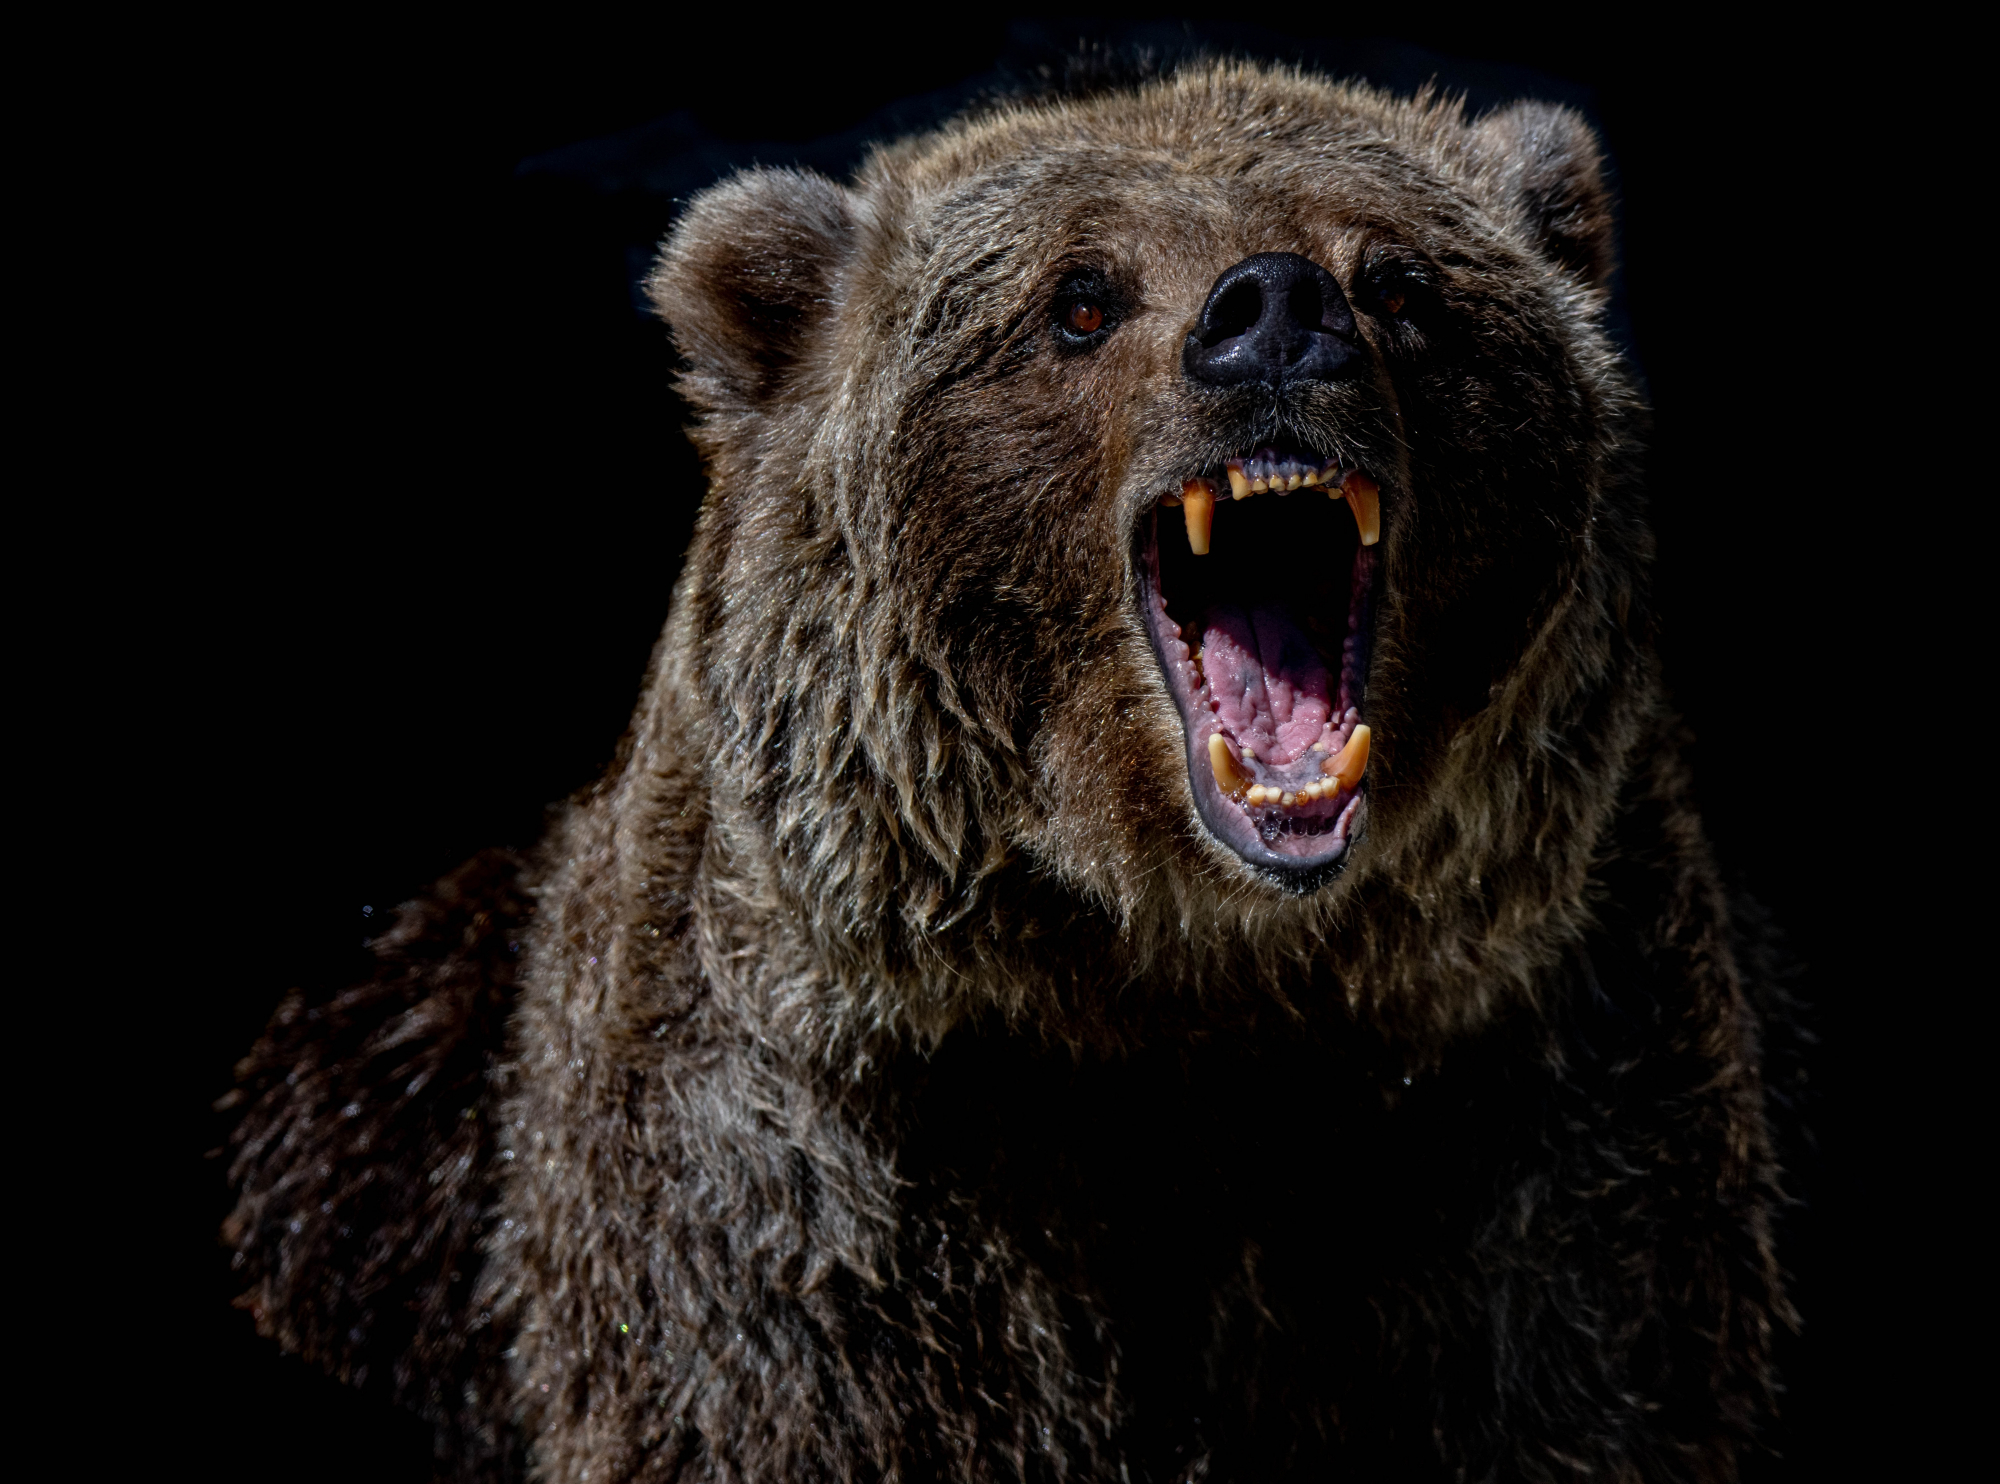 Ιταλία: Δικαστήριο σκοπεύει να θανατώσει αρκούδα που σκότωσε δρομέα - Αναζητούν εναλλακτικές